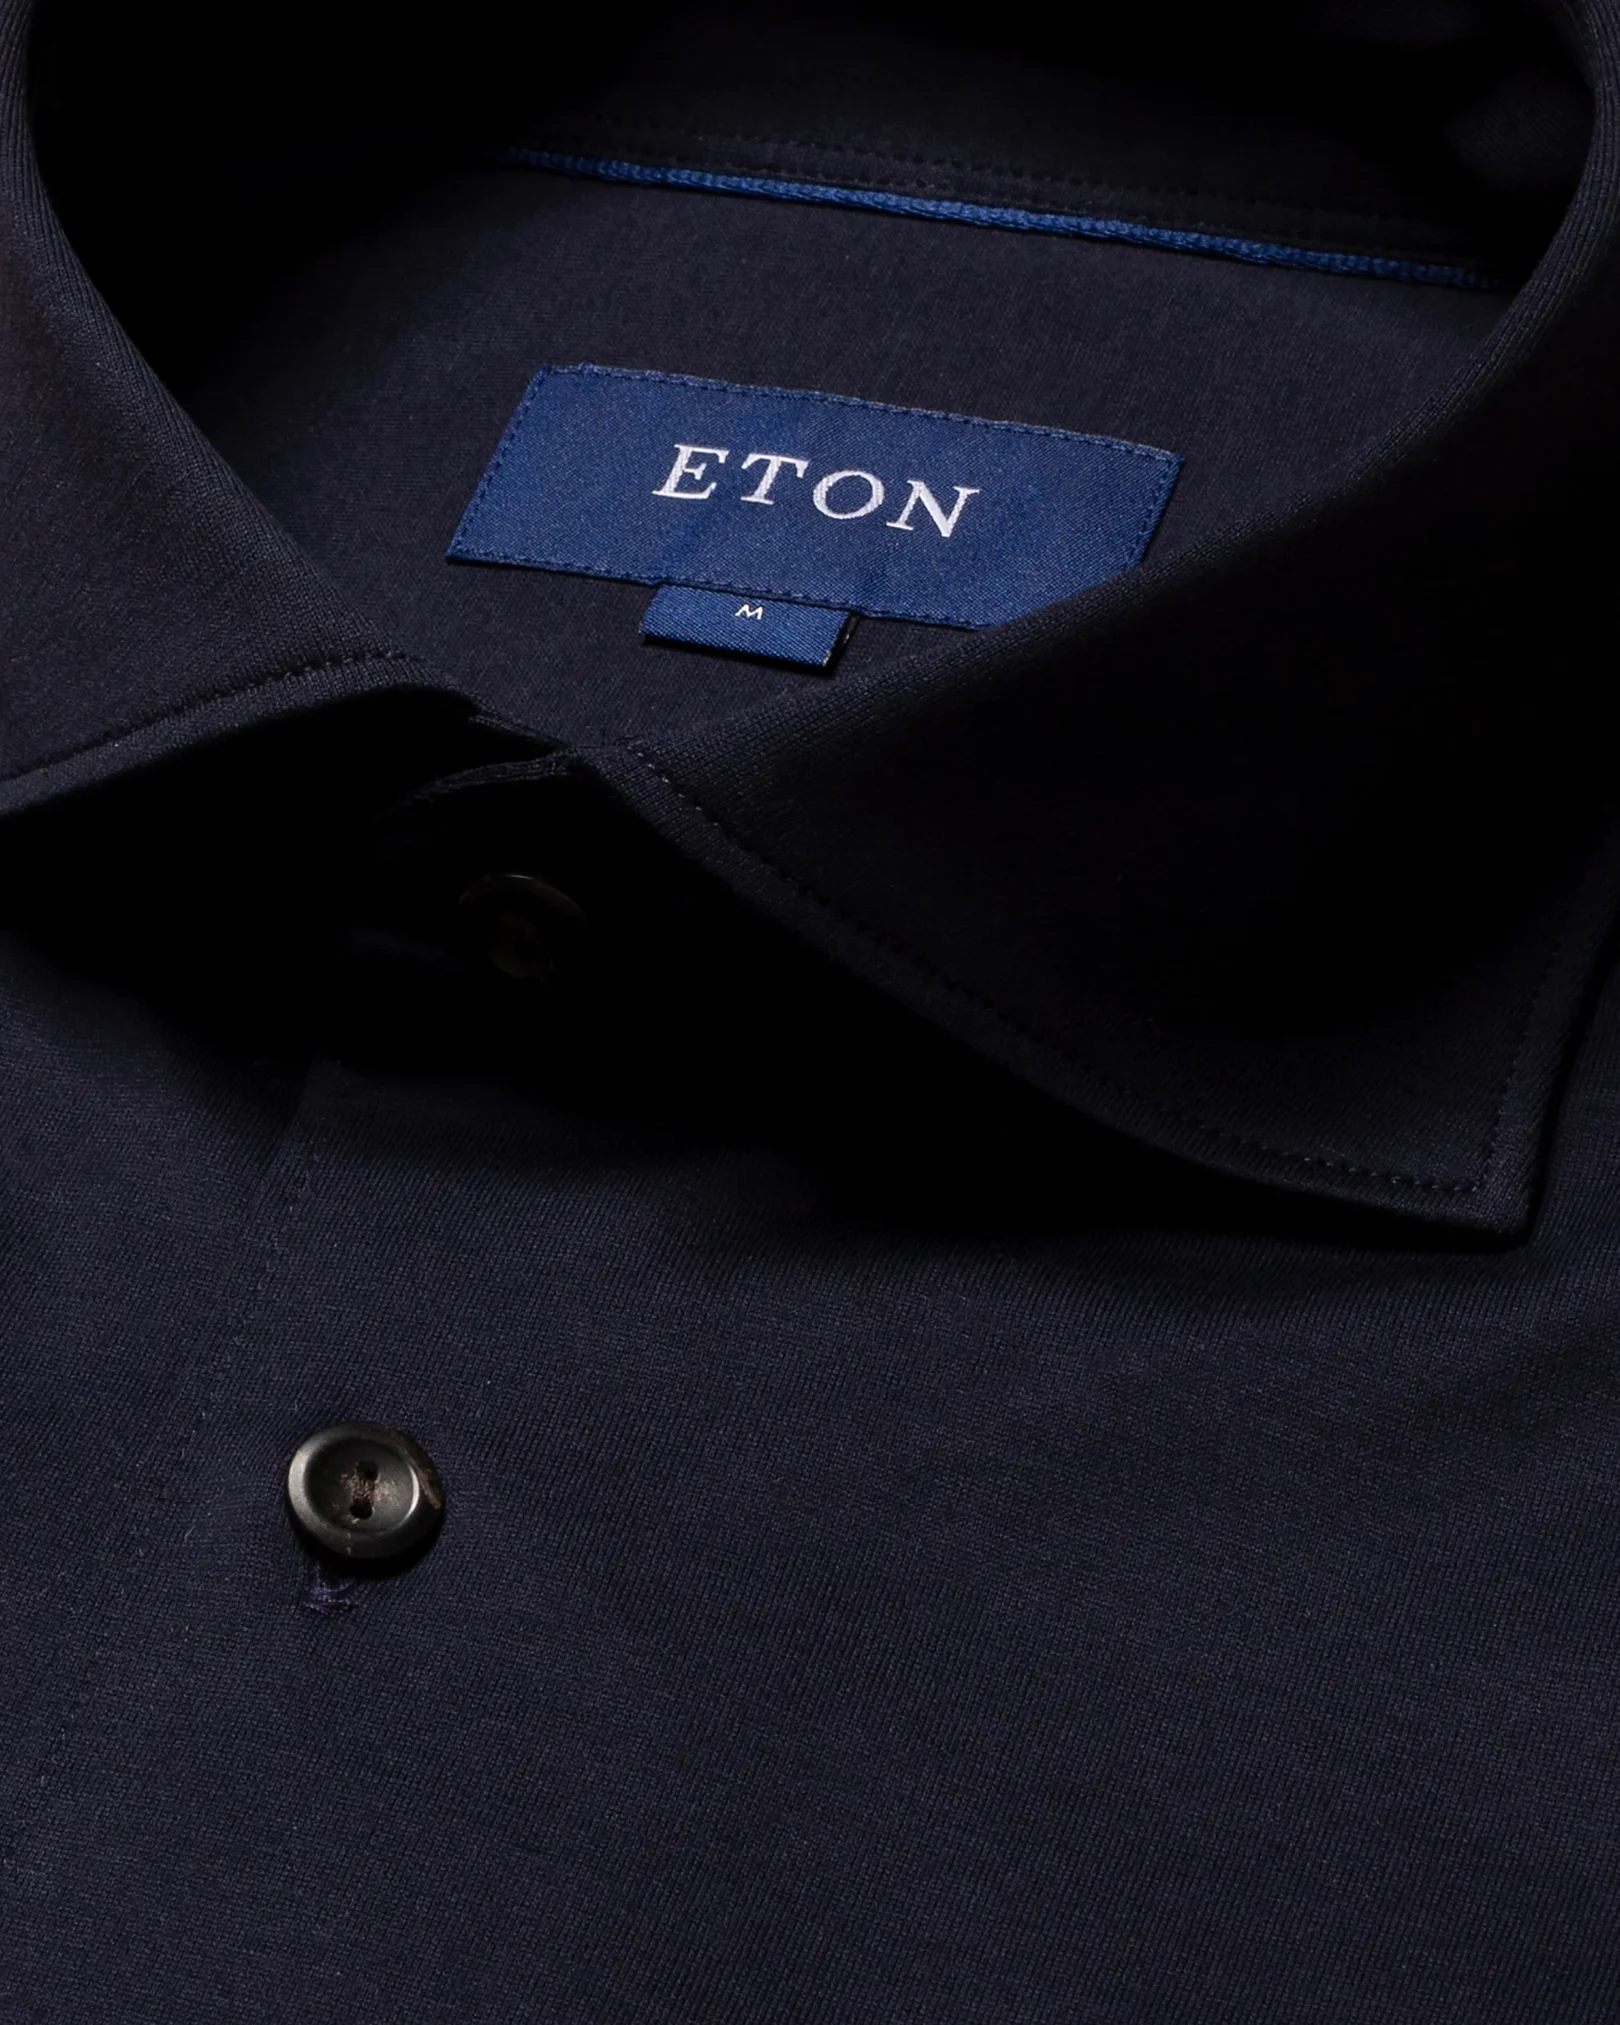 Navy Jersey Shirt - Eton